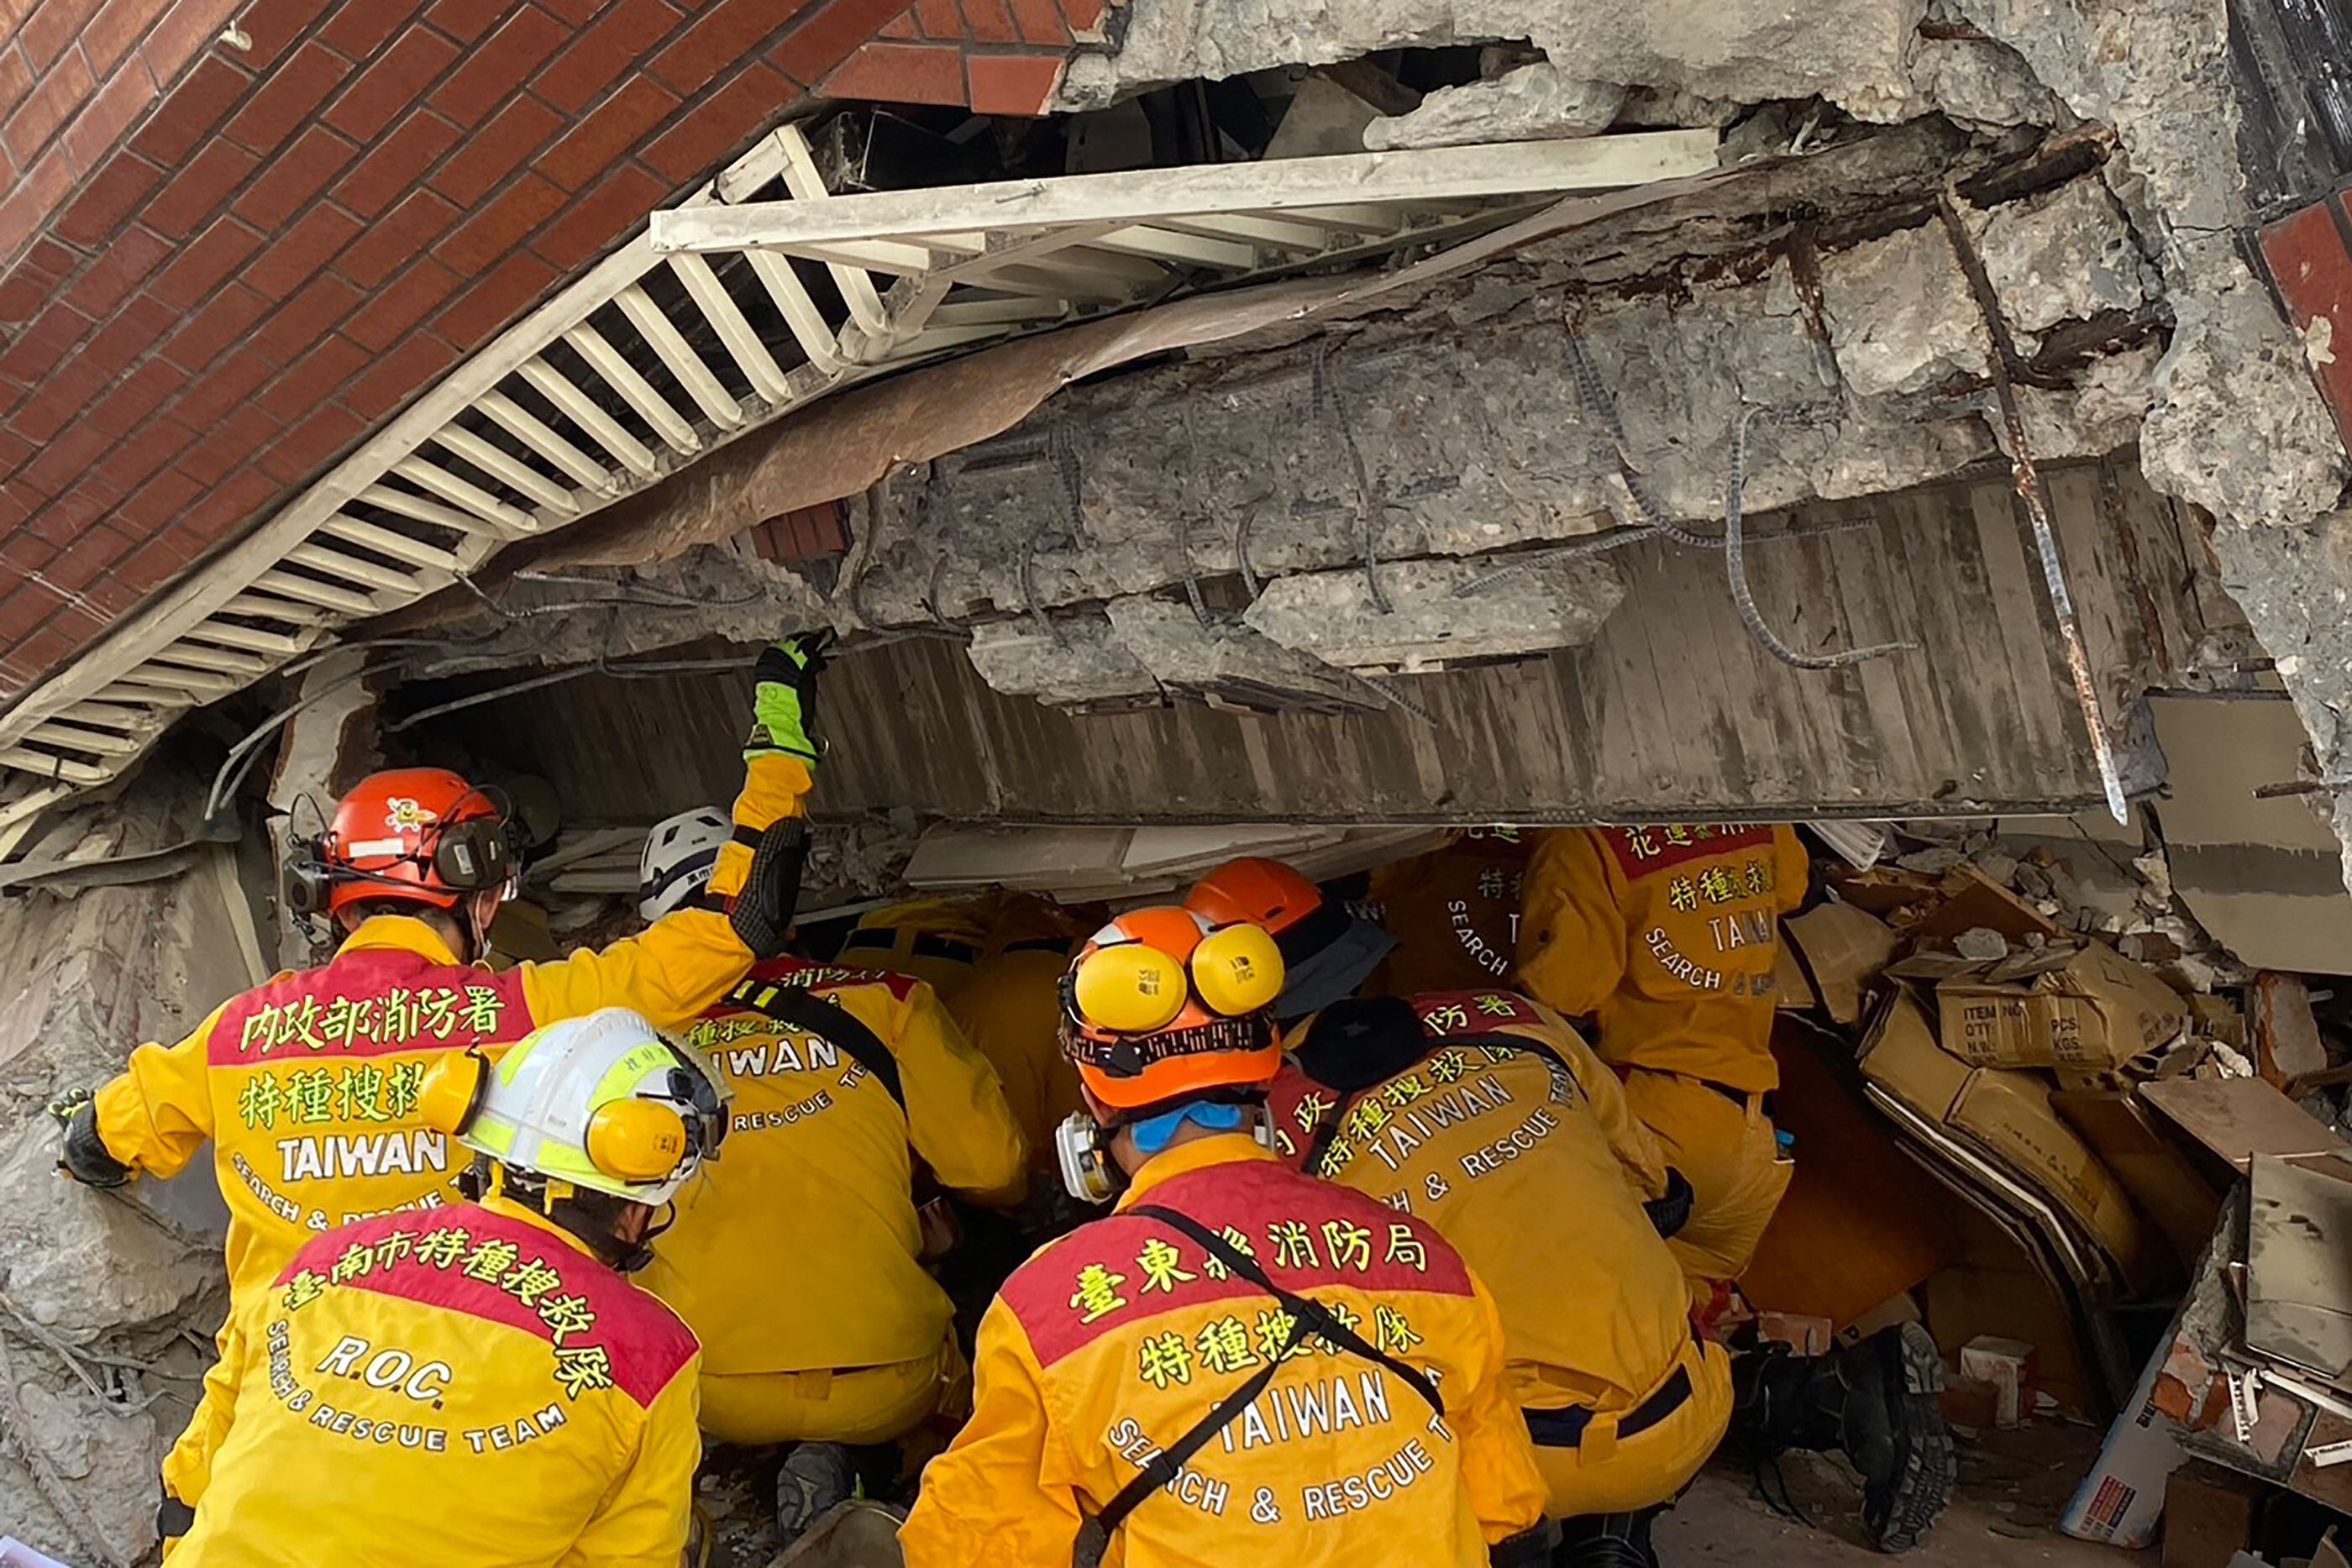 Un total de 84 edificios resultaron gravemente dañados por el terremoto, mayormente en el condado de Hualien, situado aproximadamente a 100 km al sureste de Taipéi, la capital de Taiwán.